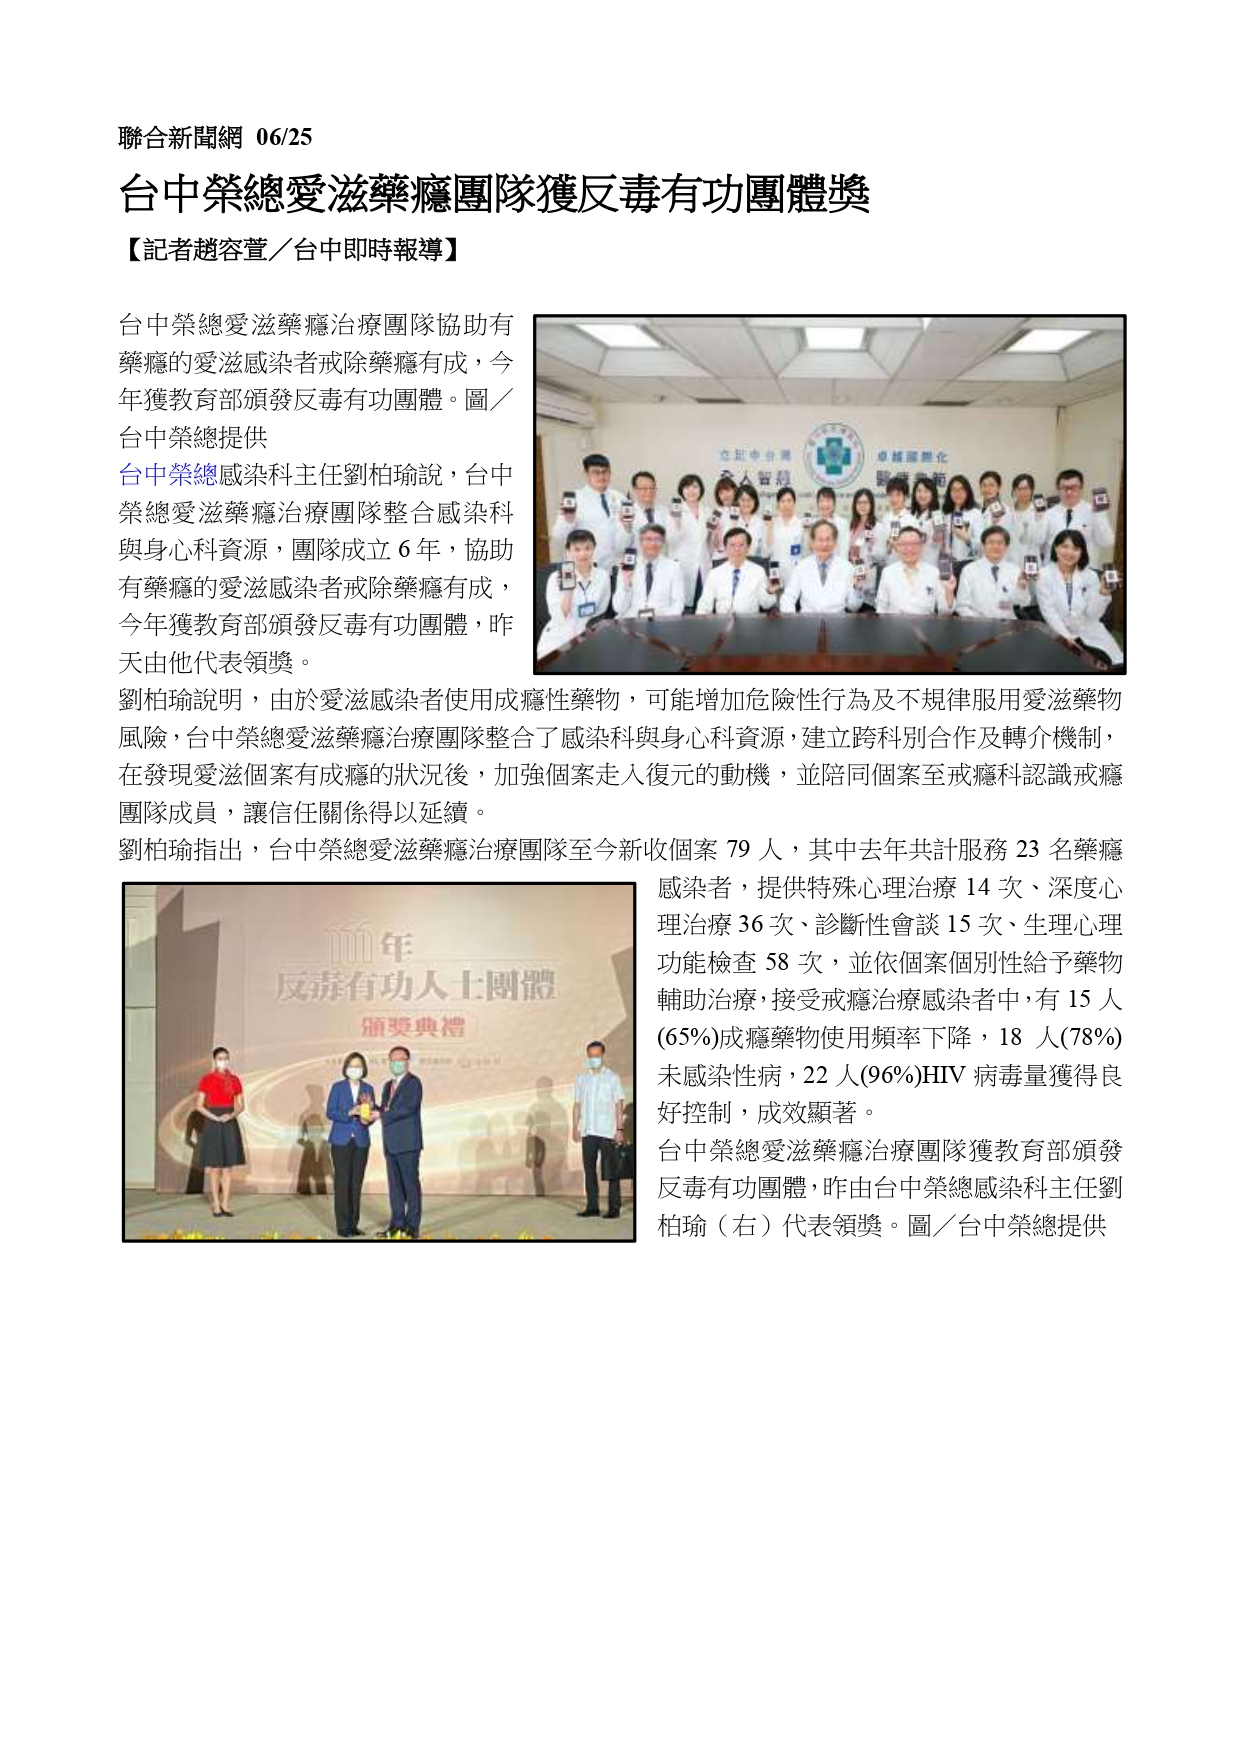 台中榮總愛滋藥癮團隊堅持守護　榮獲111年反毒有功團體獎